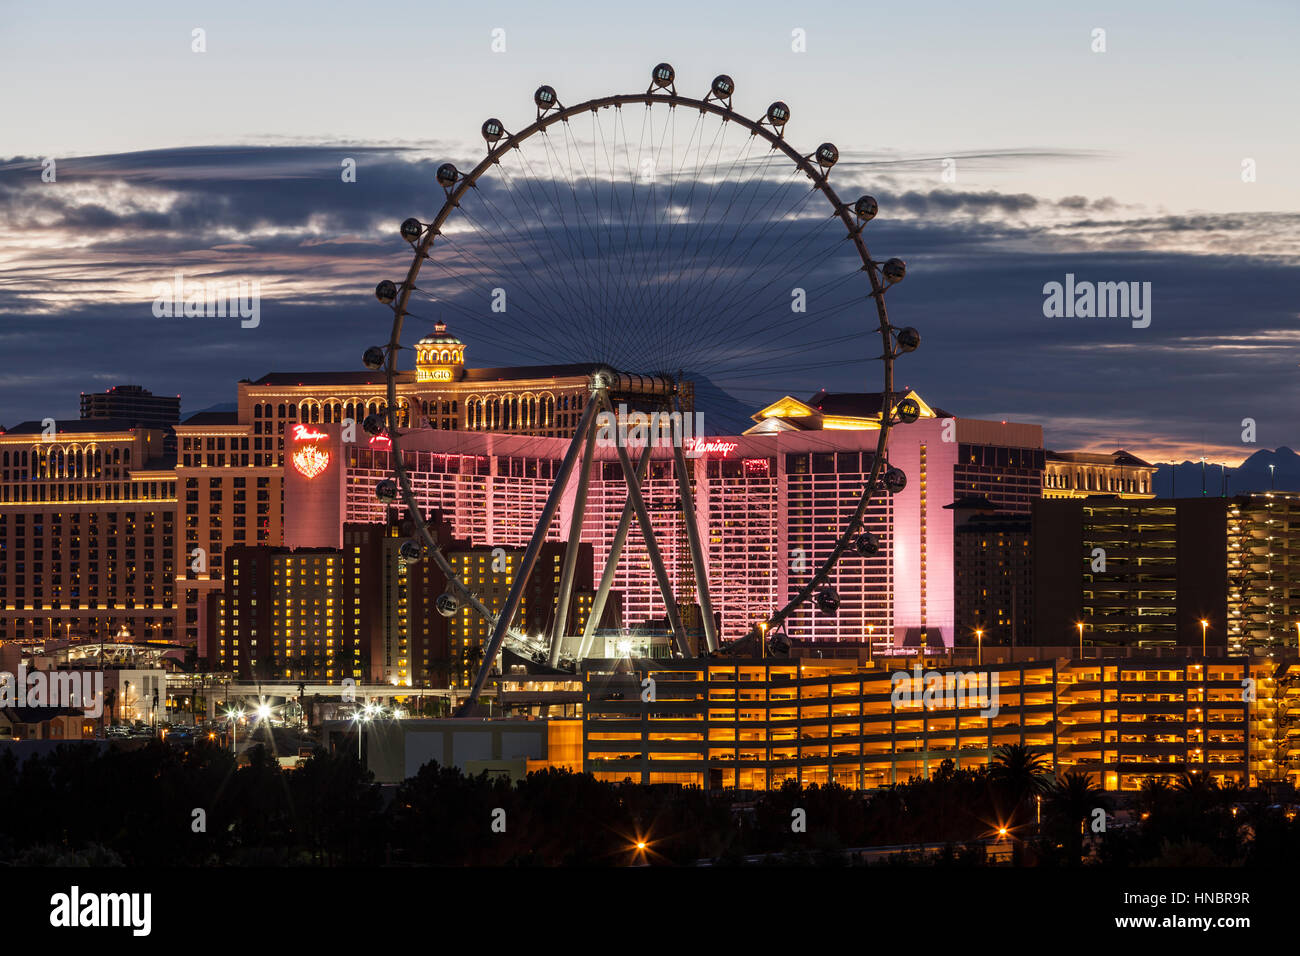 Redaktionelle Abenddämmerung Blick auf 550 Fuß High Roller als es nähert sich Fertigstellung.  Neueste Attraktion in Las Vegas ist das höchste Riesenrad der Welt. Stockfoto